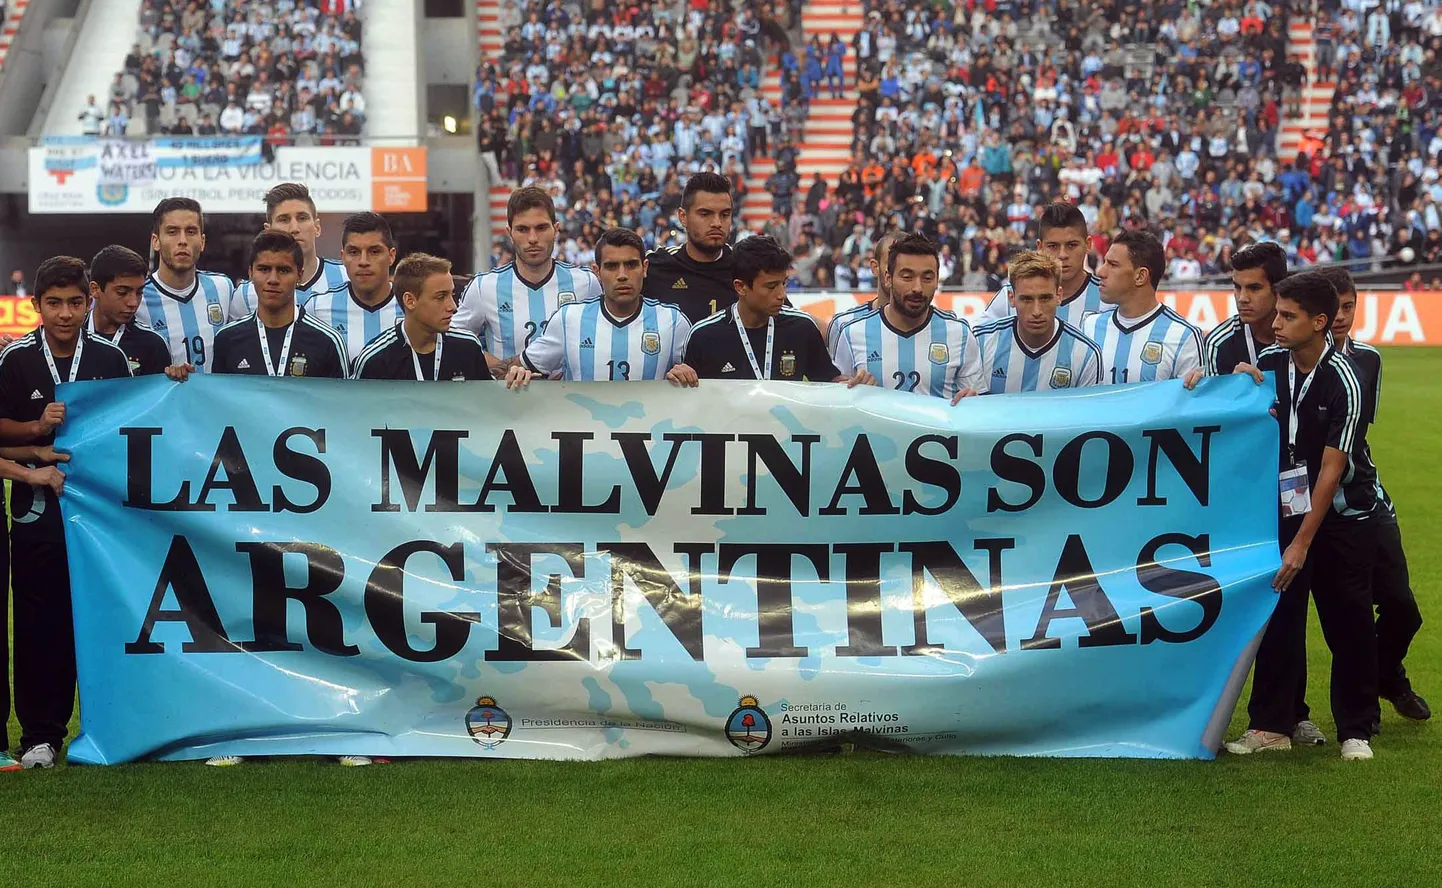 Аргентинские футболисты с транспарантом.